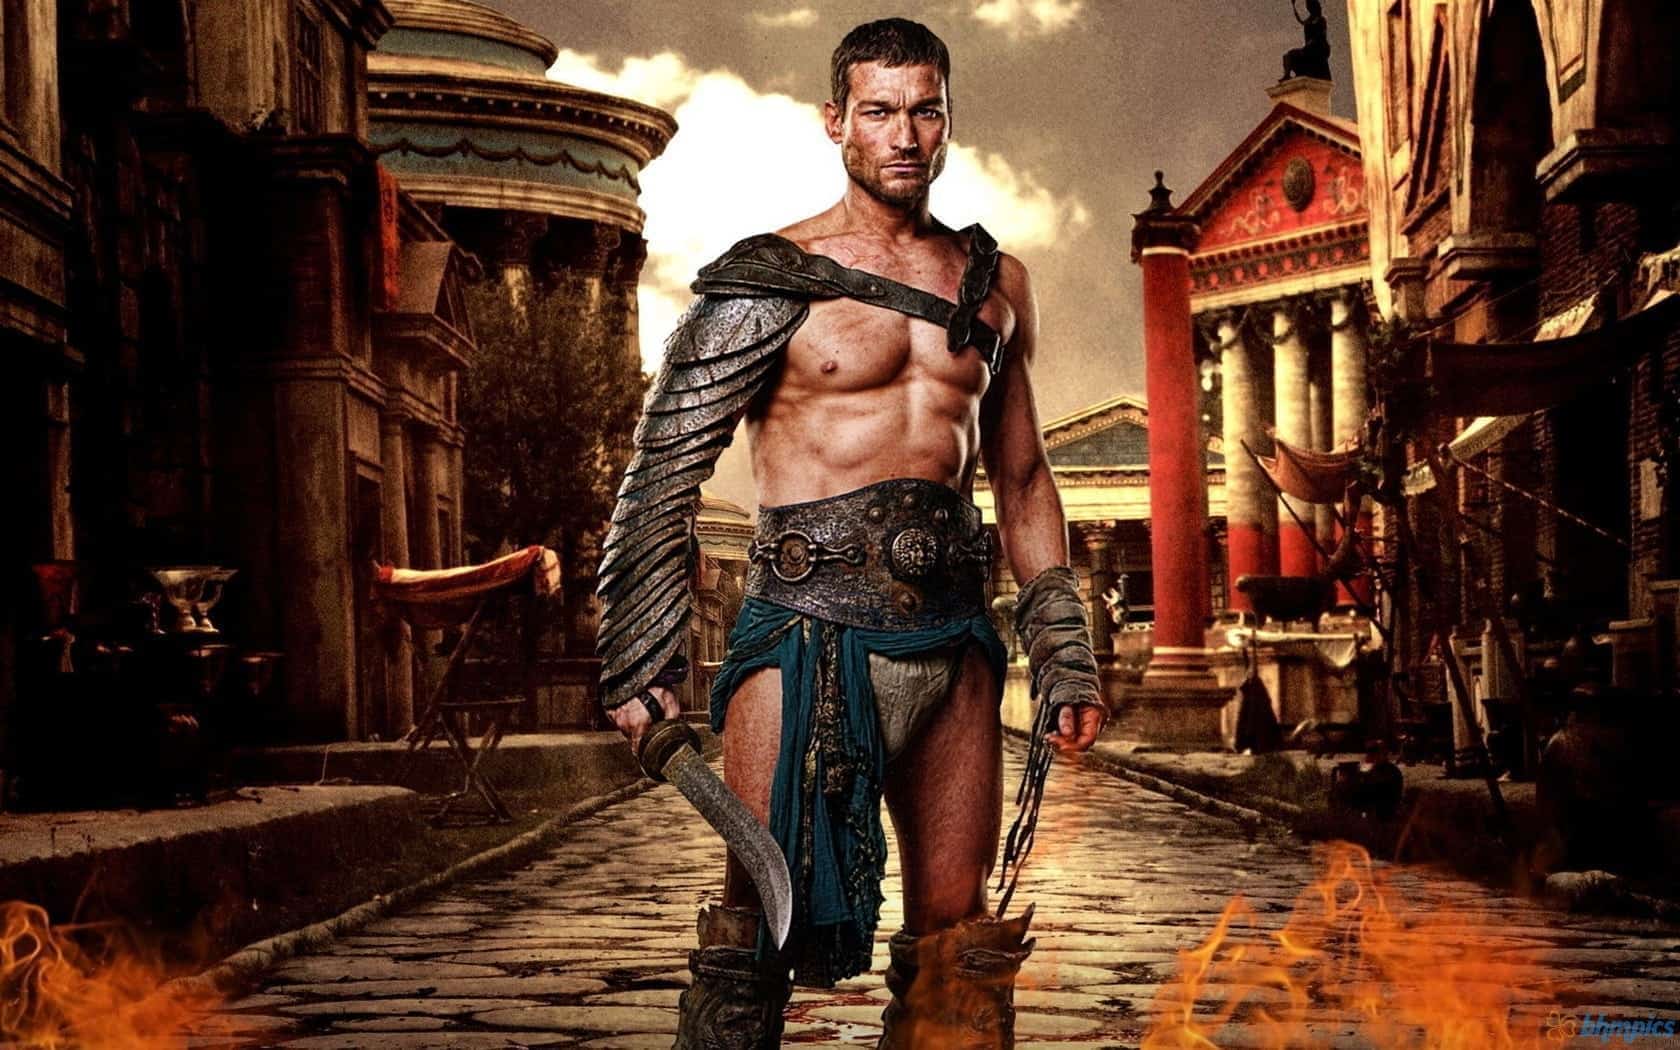 spartacus gladiator armor